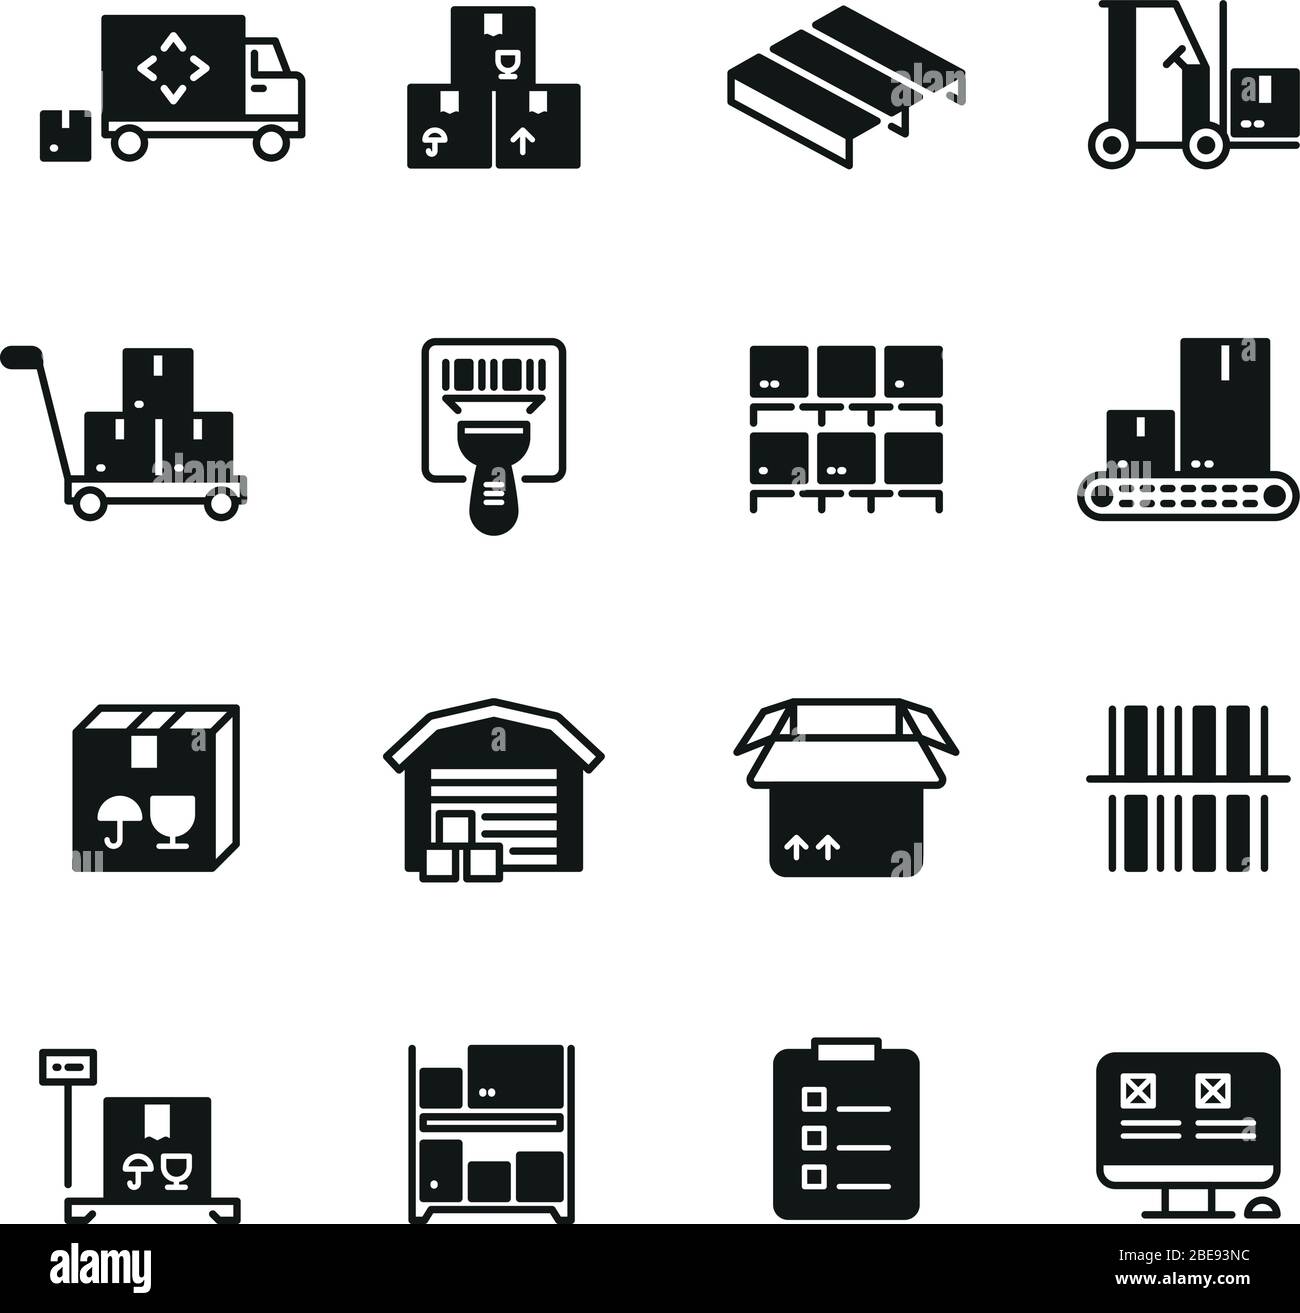 Icone vettoriali per la gestione di magazzini industriali, logistica e distribuzione. Immagine delle icone dei servizi di consegna e archiviazione Illustrazione Vettoriale